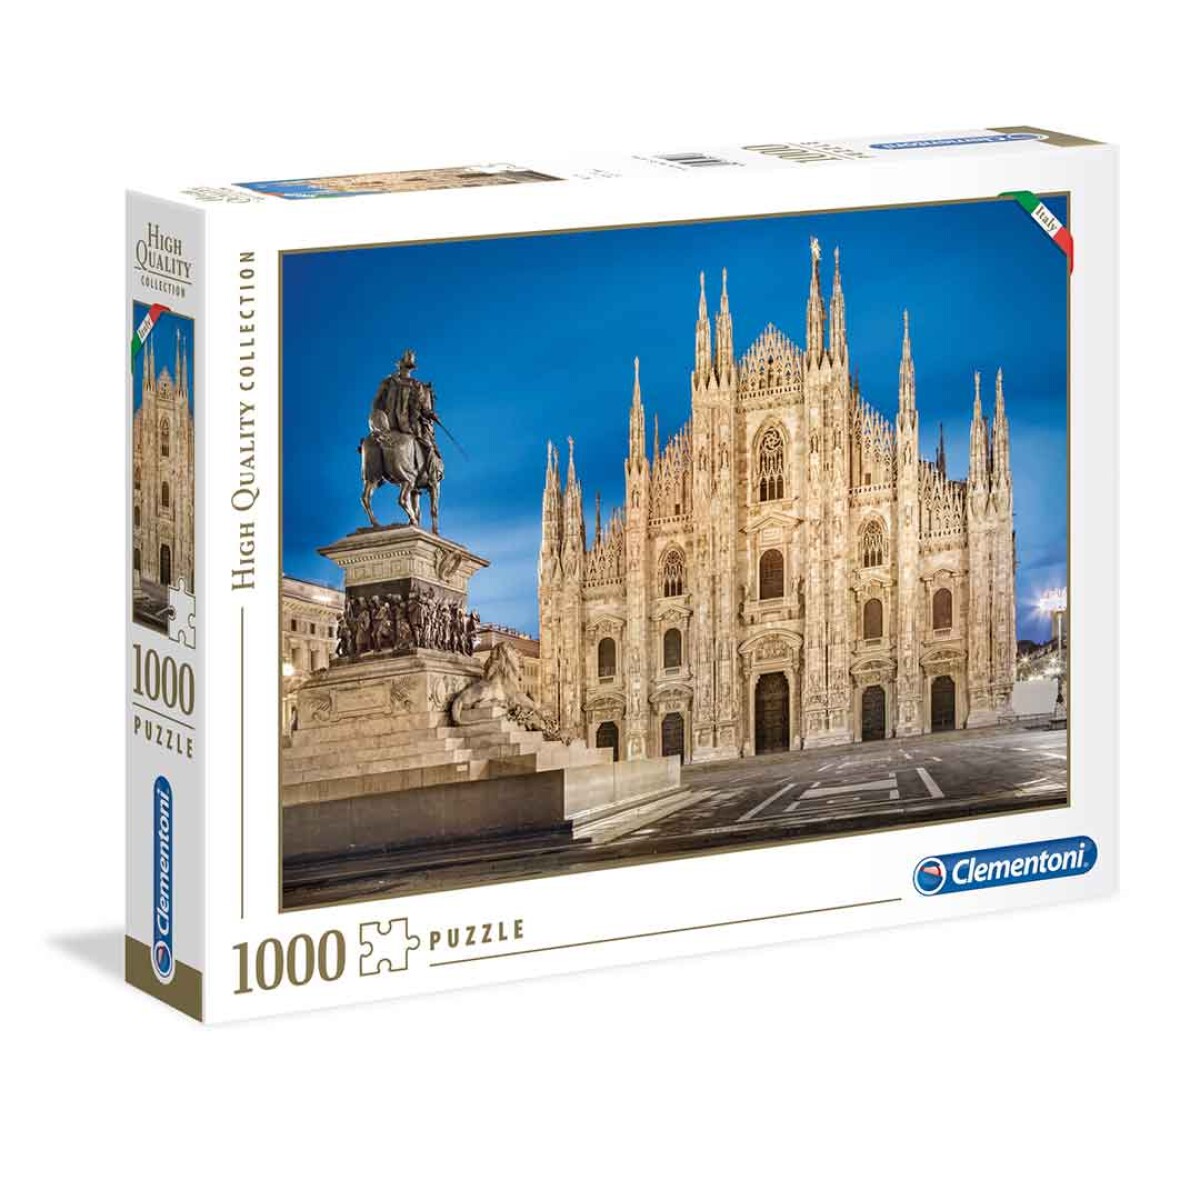 Puzzle Clementoni 1000 piezas Milán High Quality - 001 